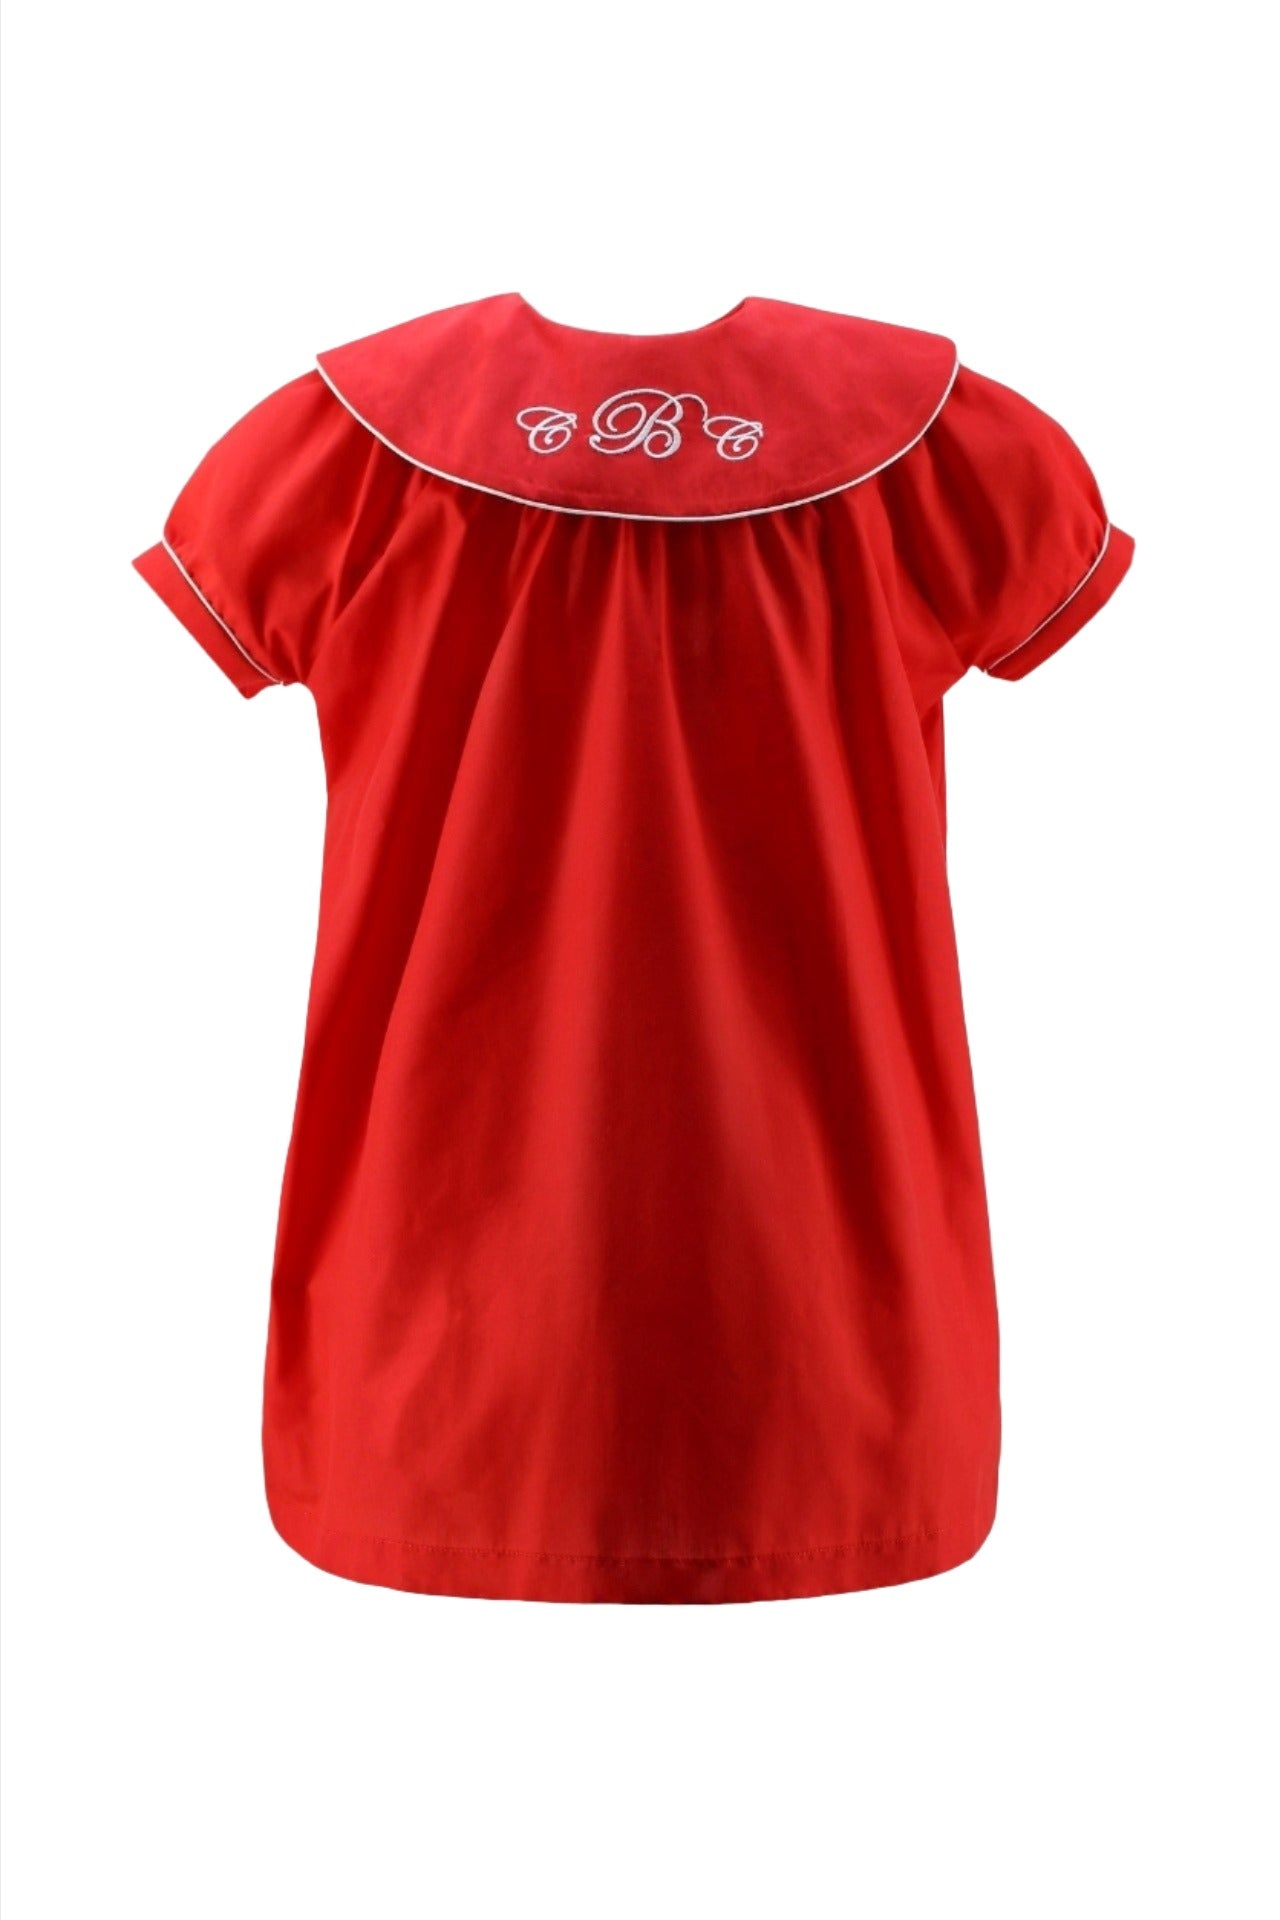 Mongramable Toddler Girl Short Sleeve Dress